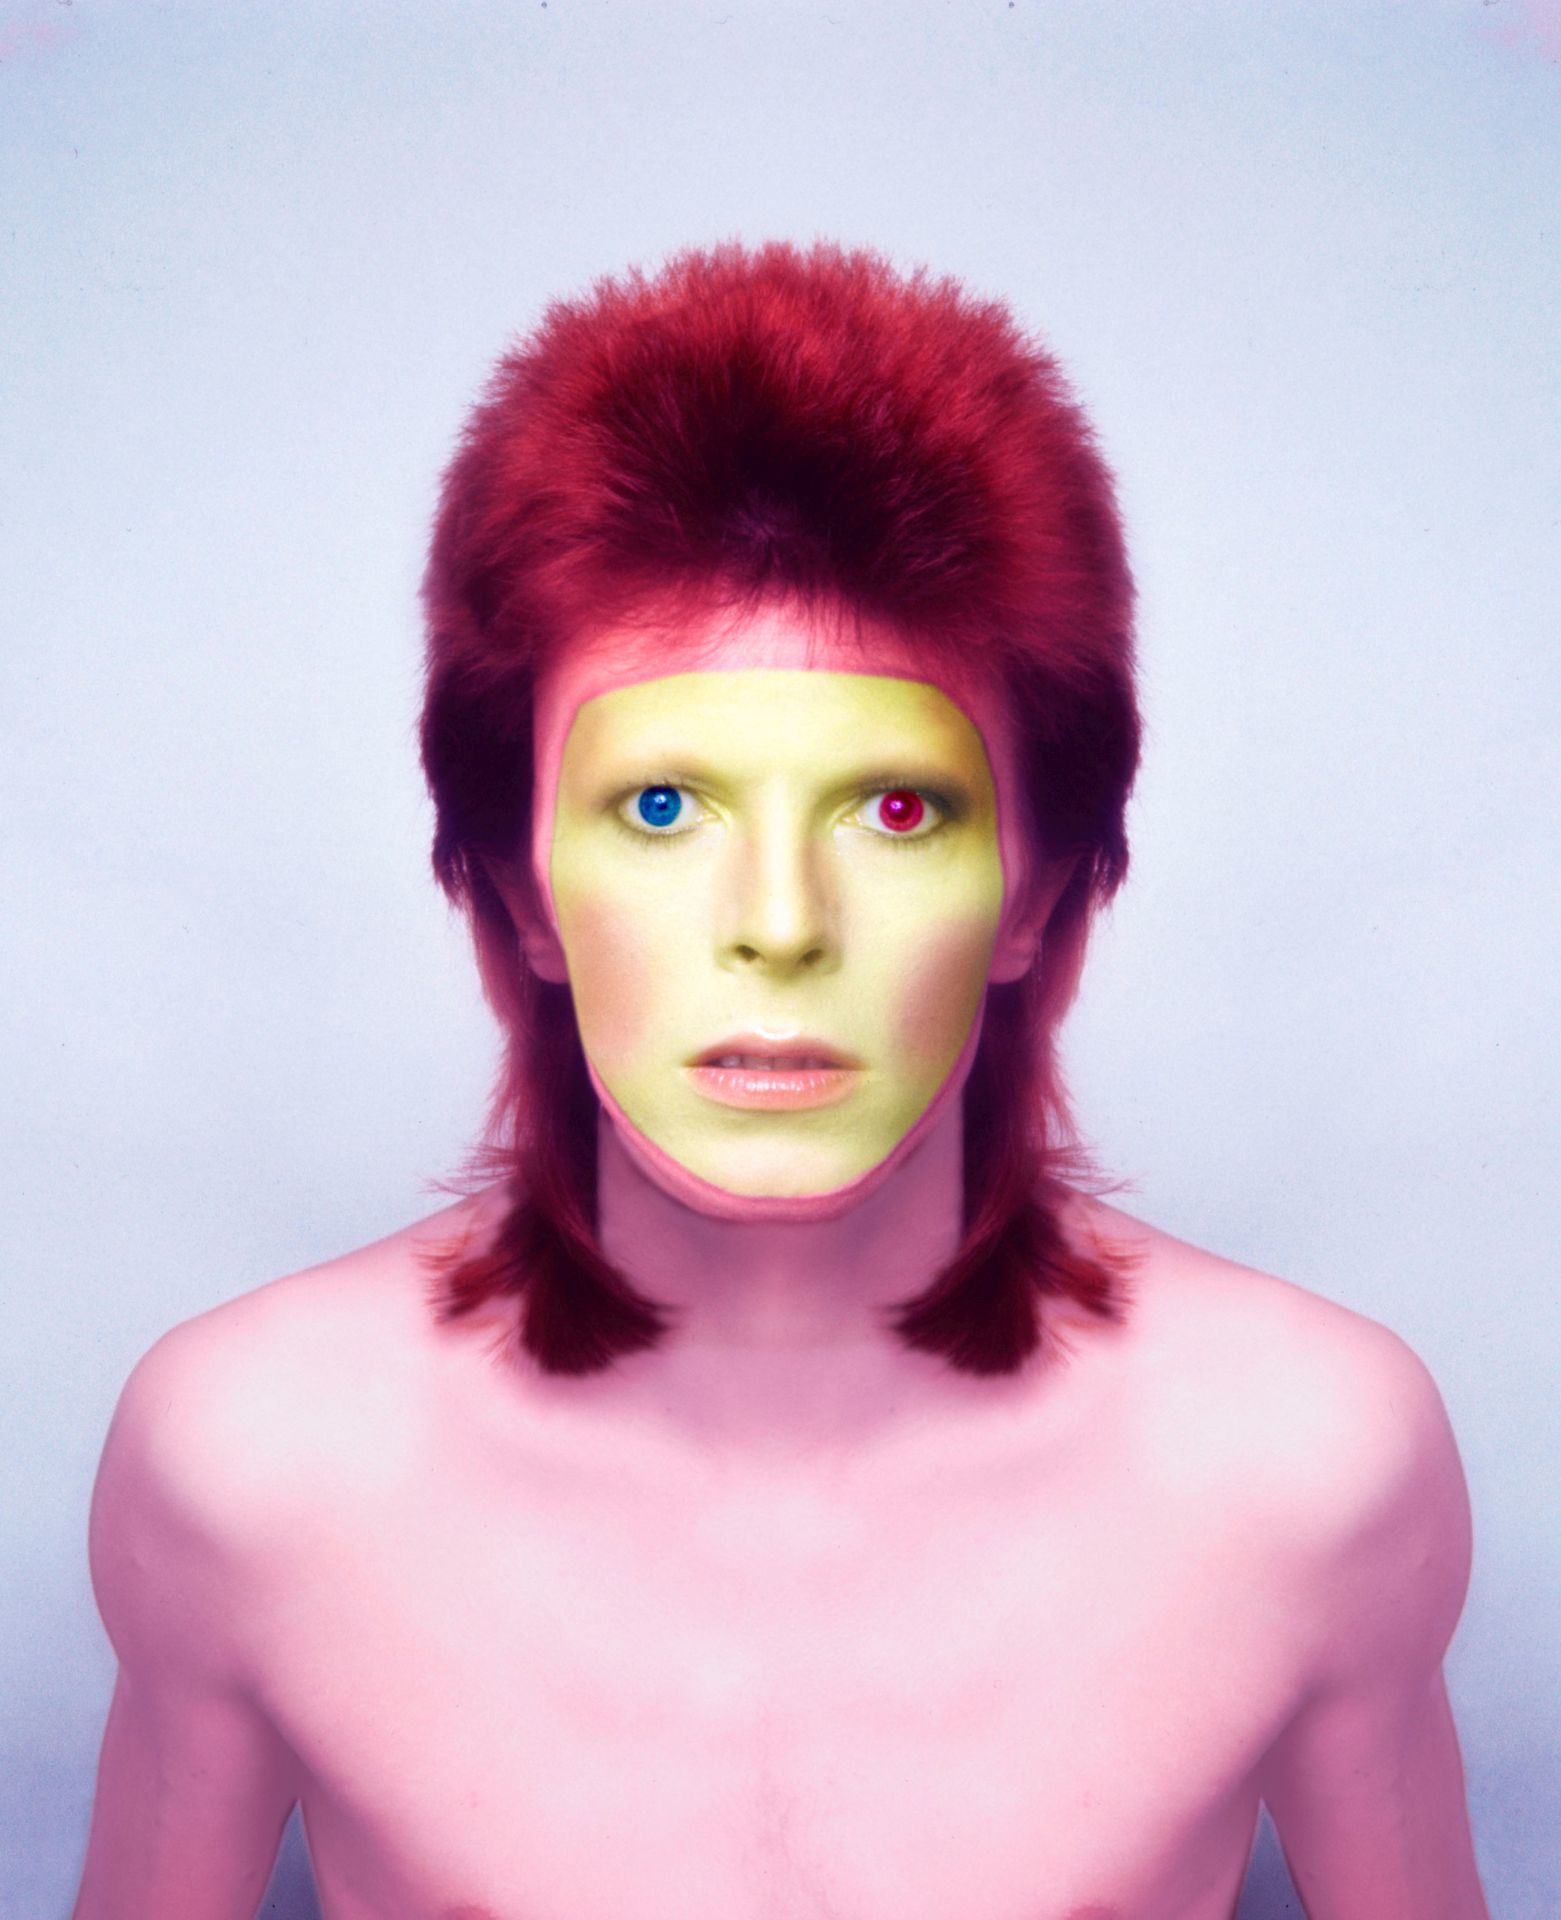 David Bowie 1973-ban. A fotó Pin Ups albumához kapcsolódóan készült.